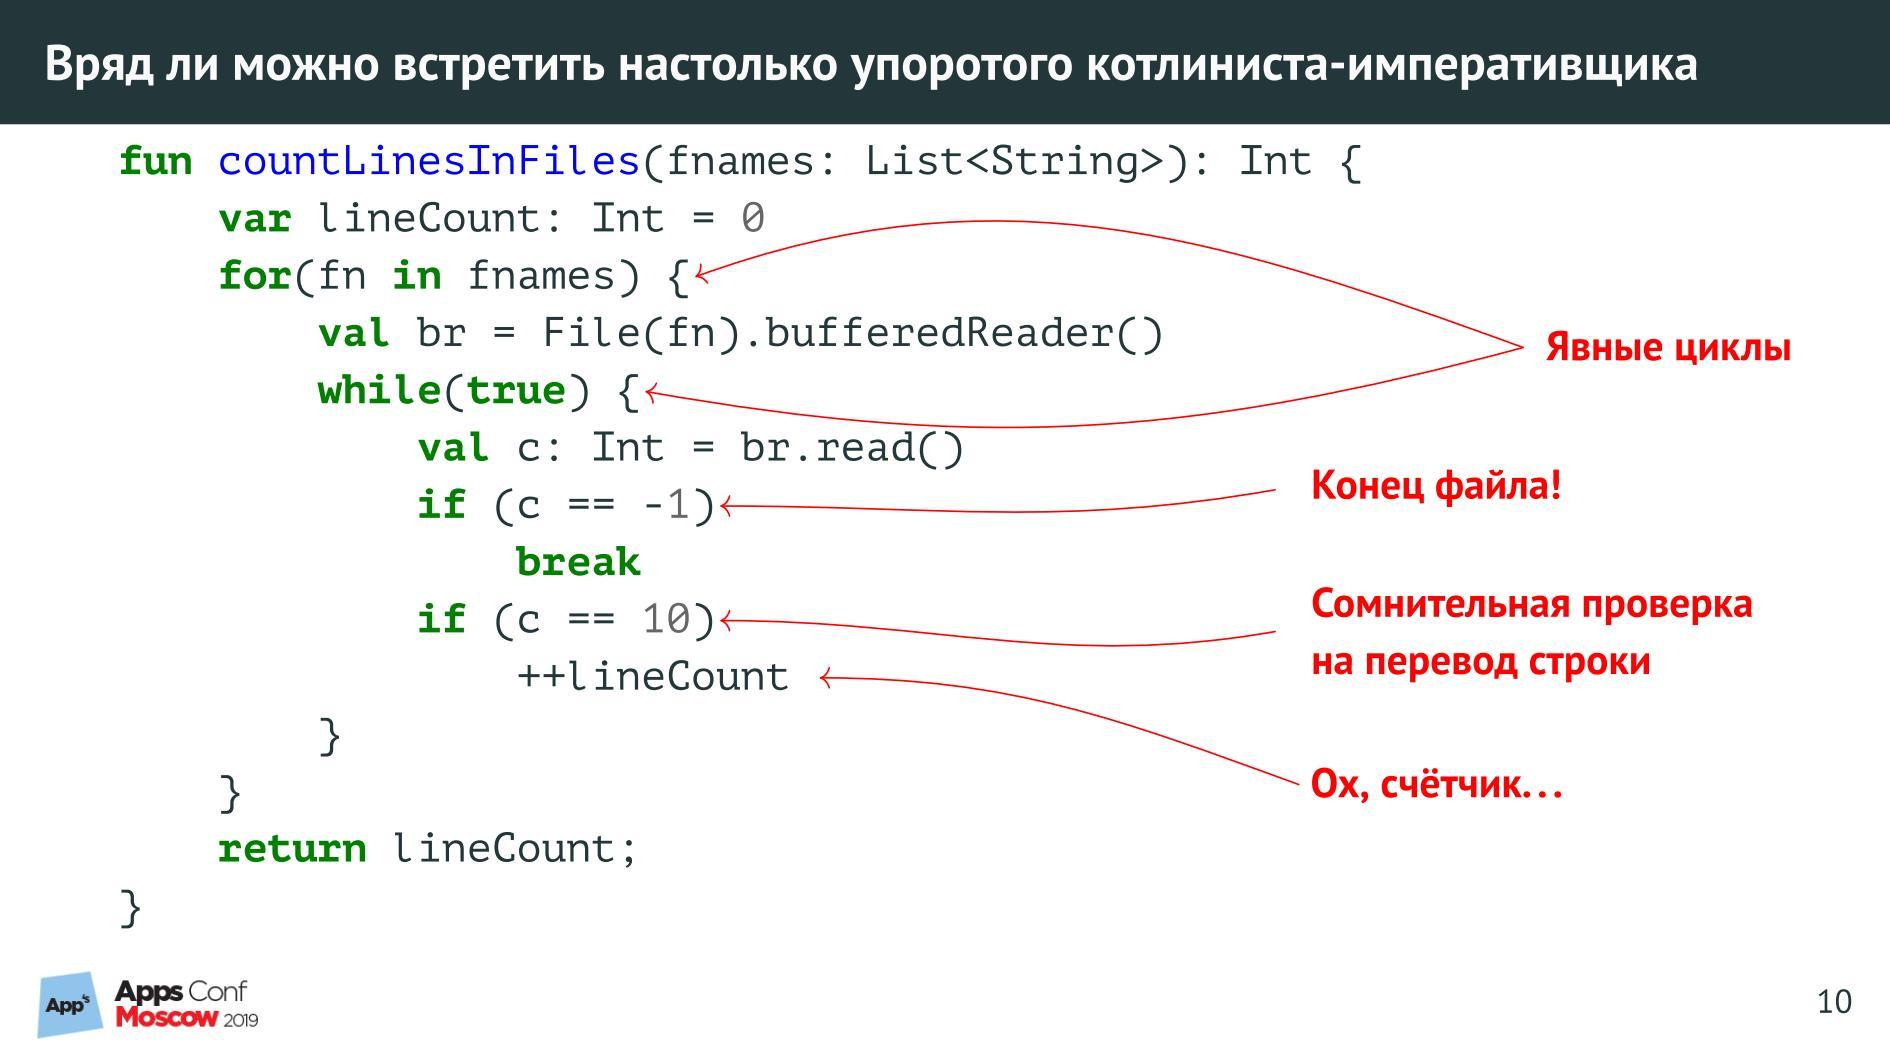 Функциональное программирование пример кода